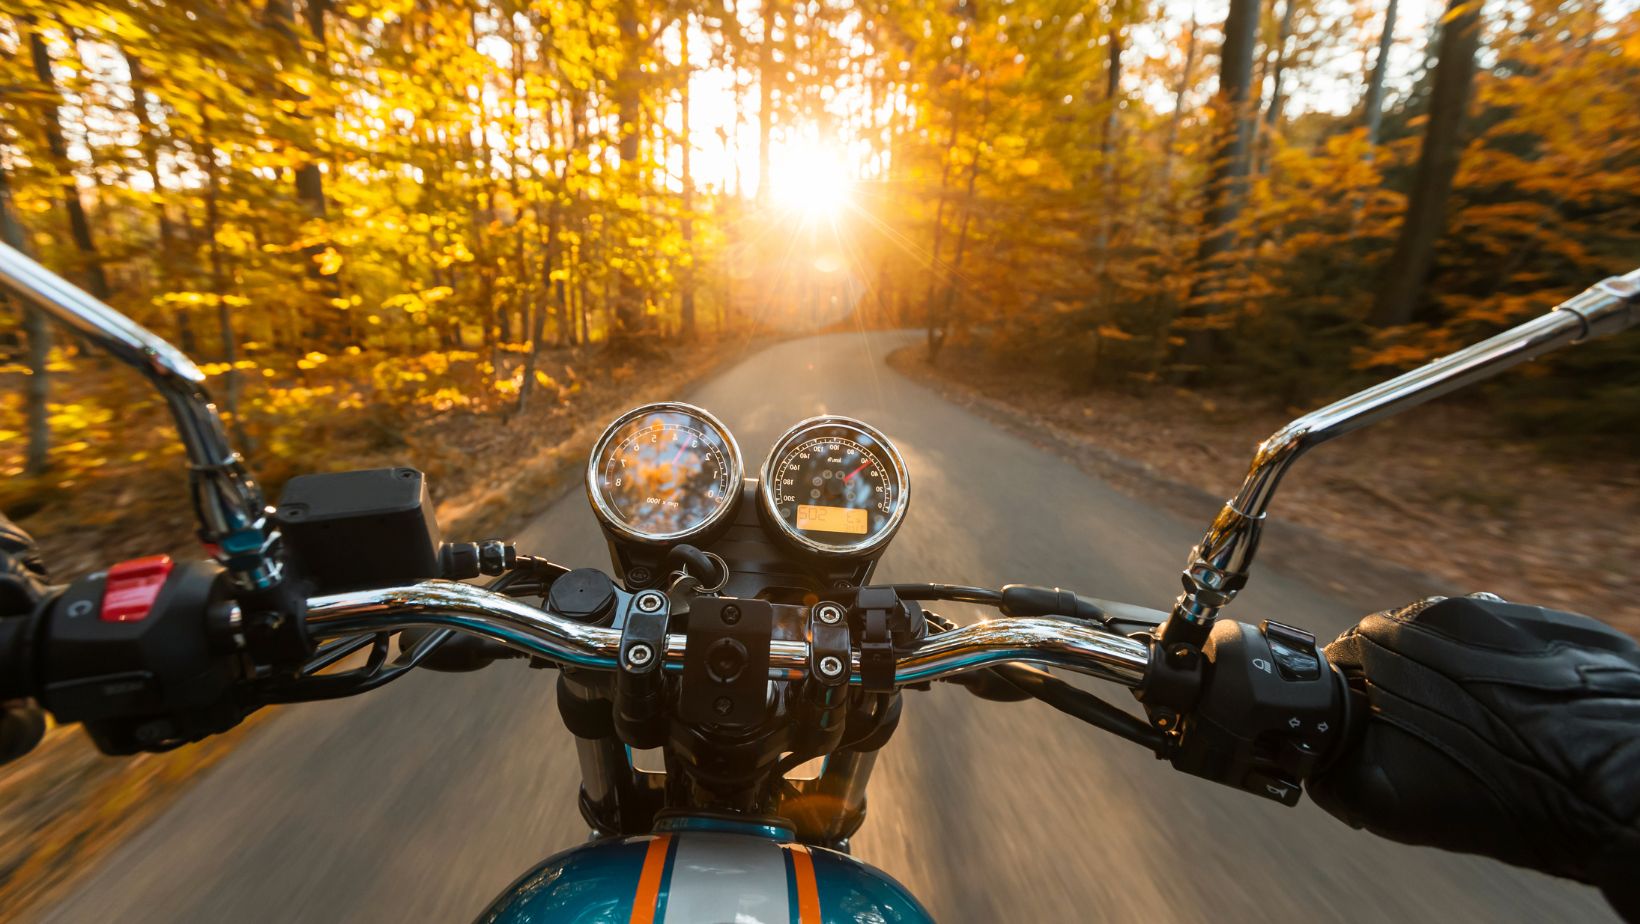 Changer de vitesse sur une moto pour une conduite sûre et fluide – Bikesaint